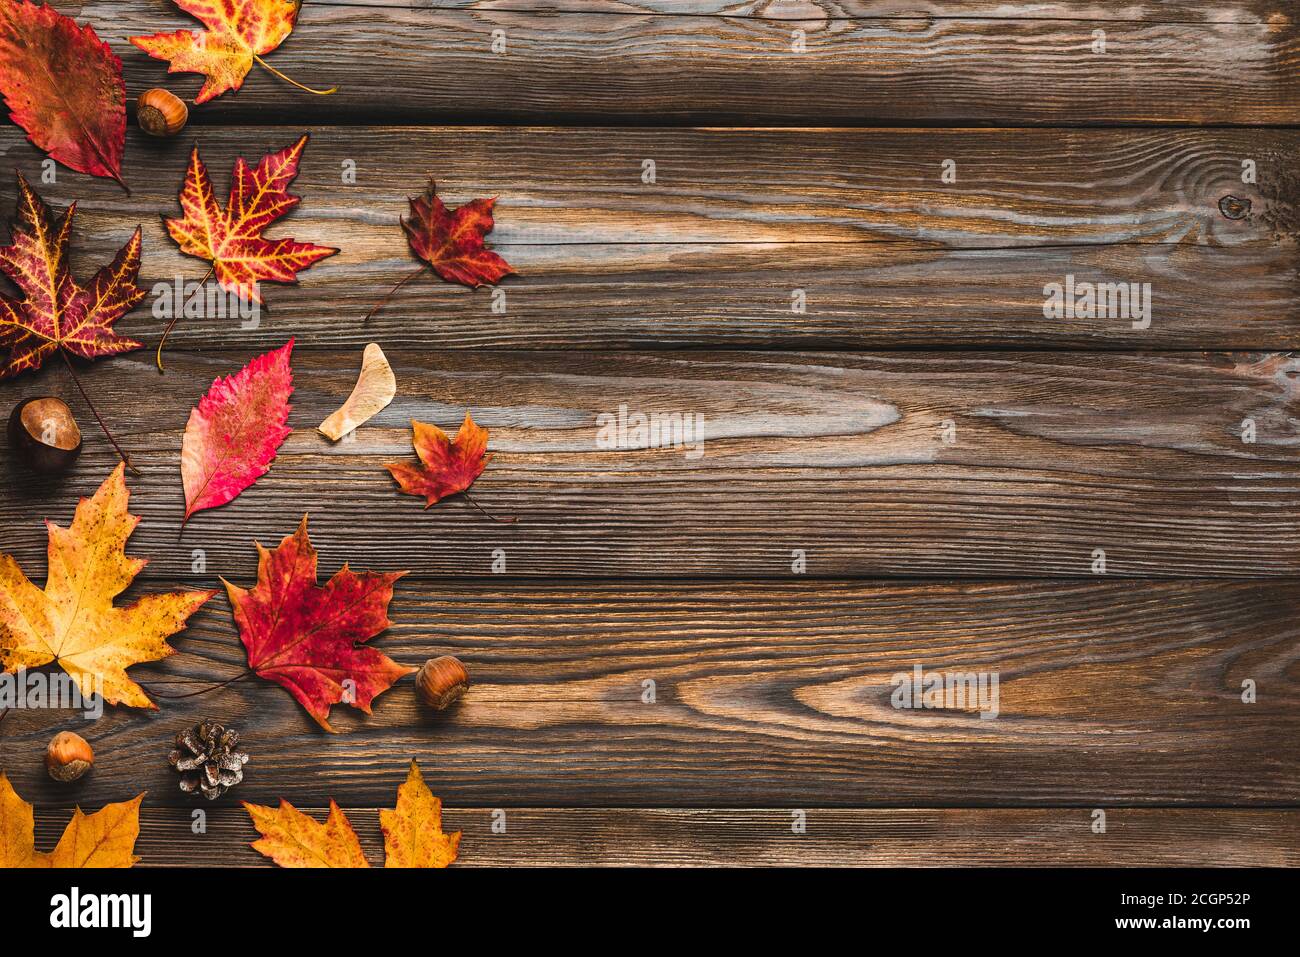 Composition automnale composée de feuilles d'automne, de fleurs, de noix, de cônes de pin sur fond rustique en bois. Flat lay, vue de dessus avec espace de copie Banque D'Images